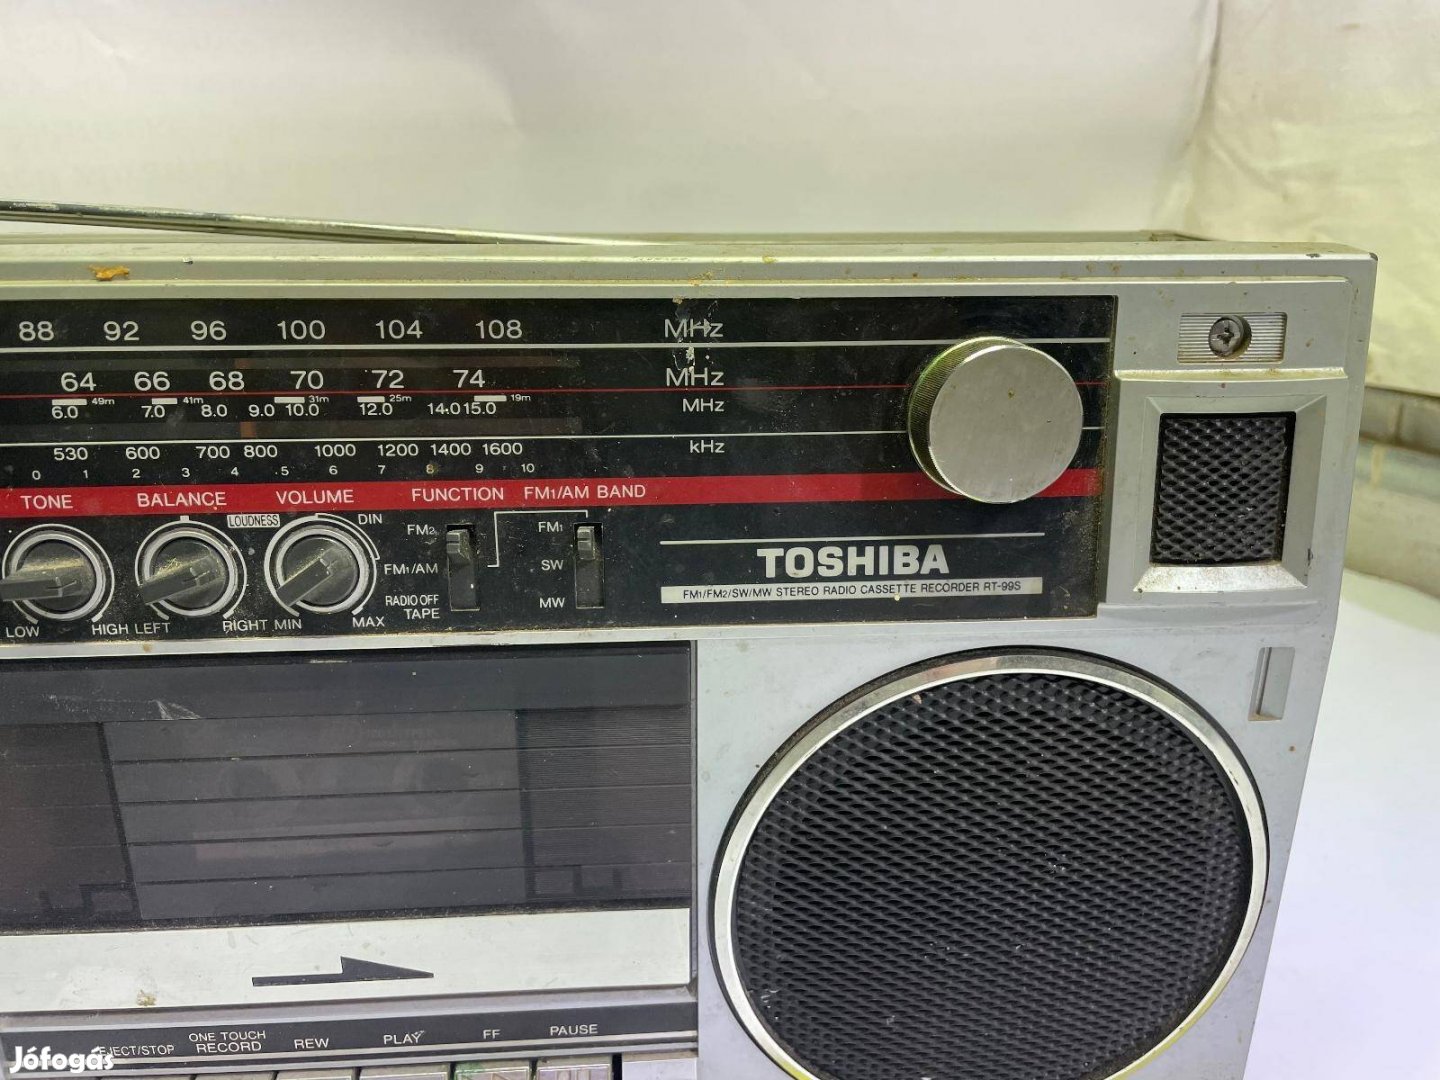 Keresek: Toshiba RT-99S rádiót keresek